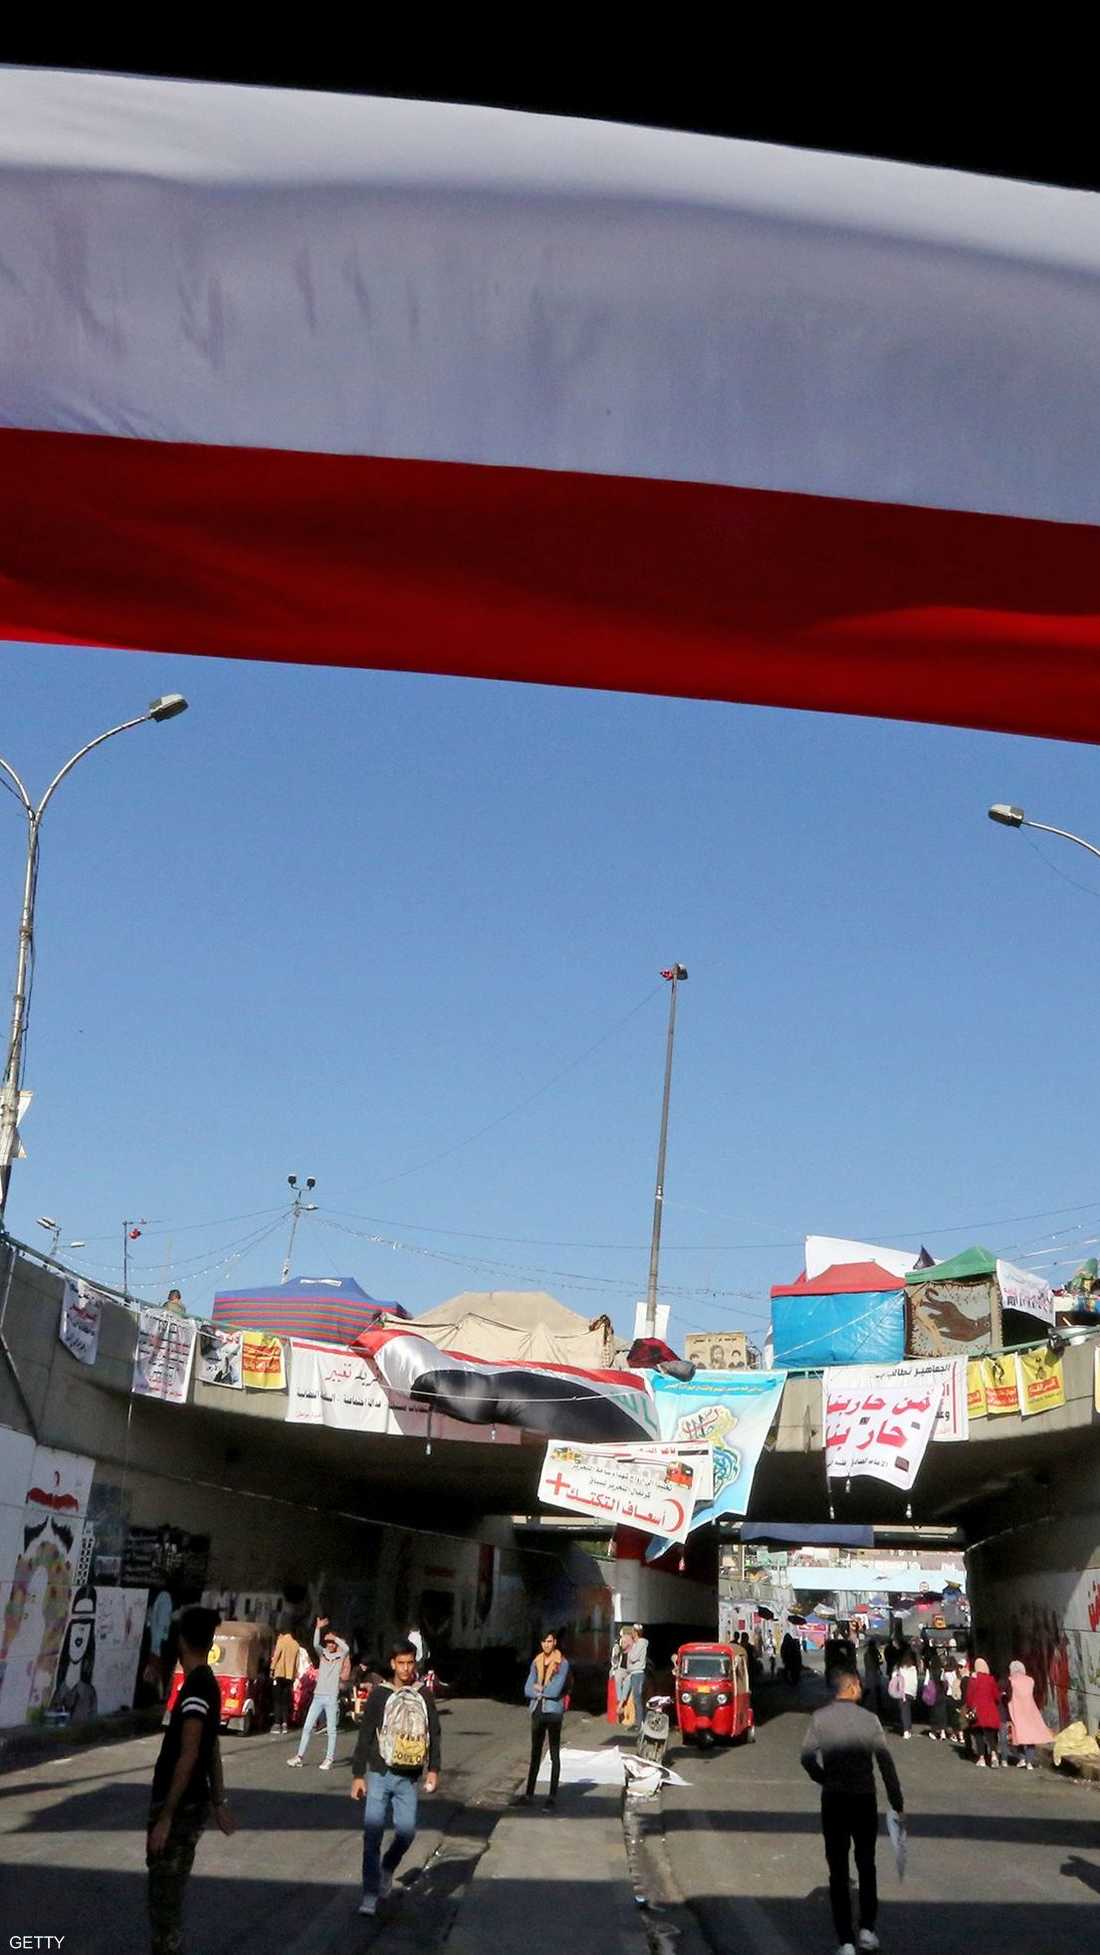 اجتاحت التظاهرات بغداد ومدن الجنوب، وقوبلت التظاهرات برد فعل عنيف من القوات الأمنية باطلاق الرصاص الحي